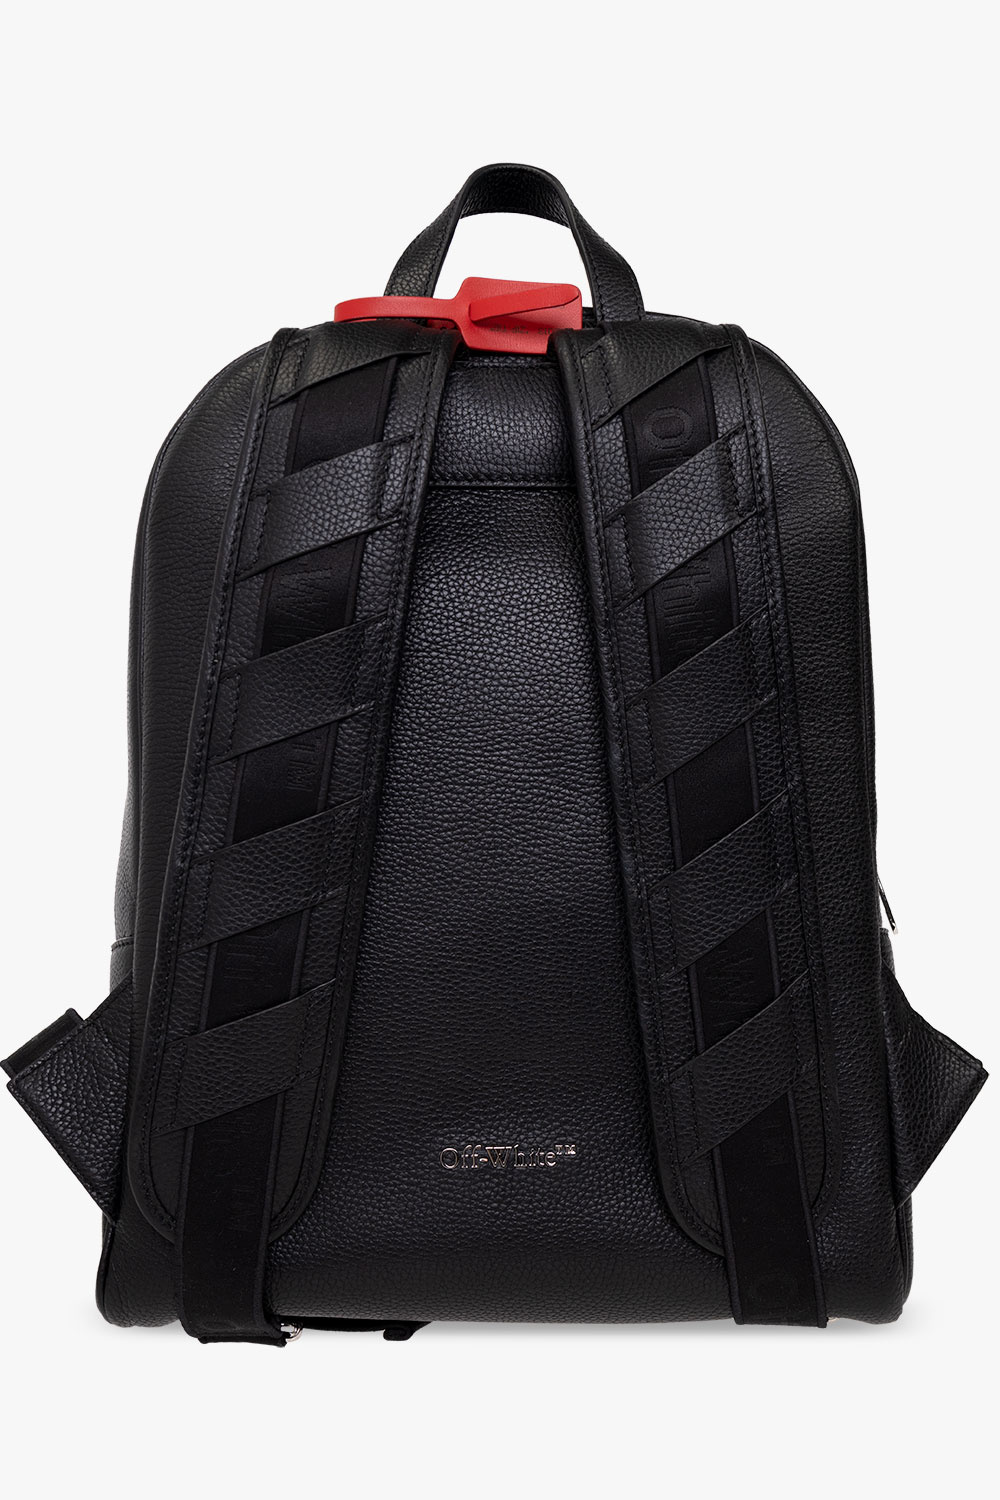 Off-White ‘Binder‘ backpack